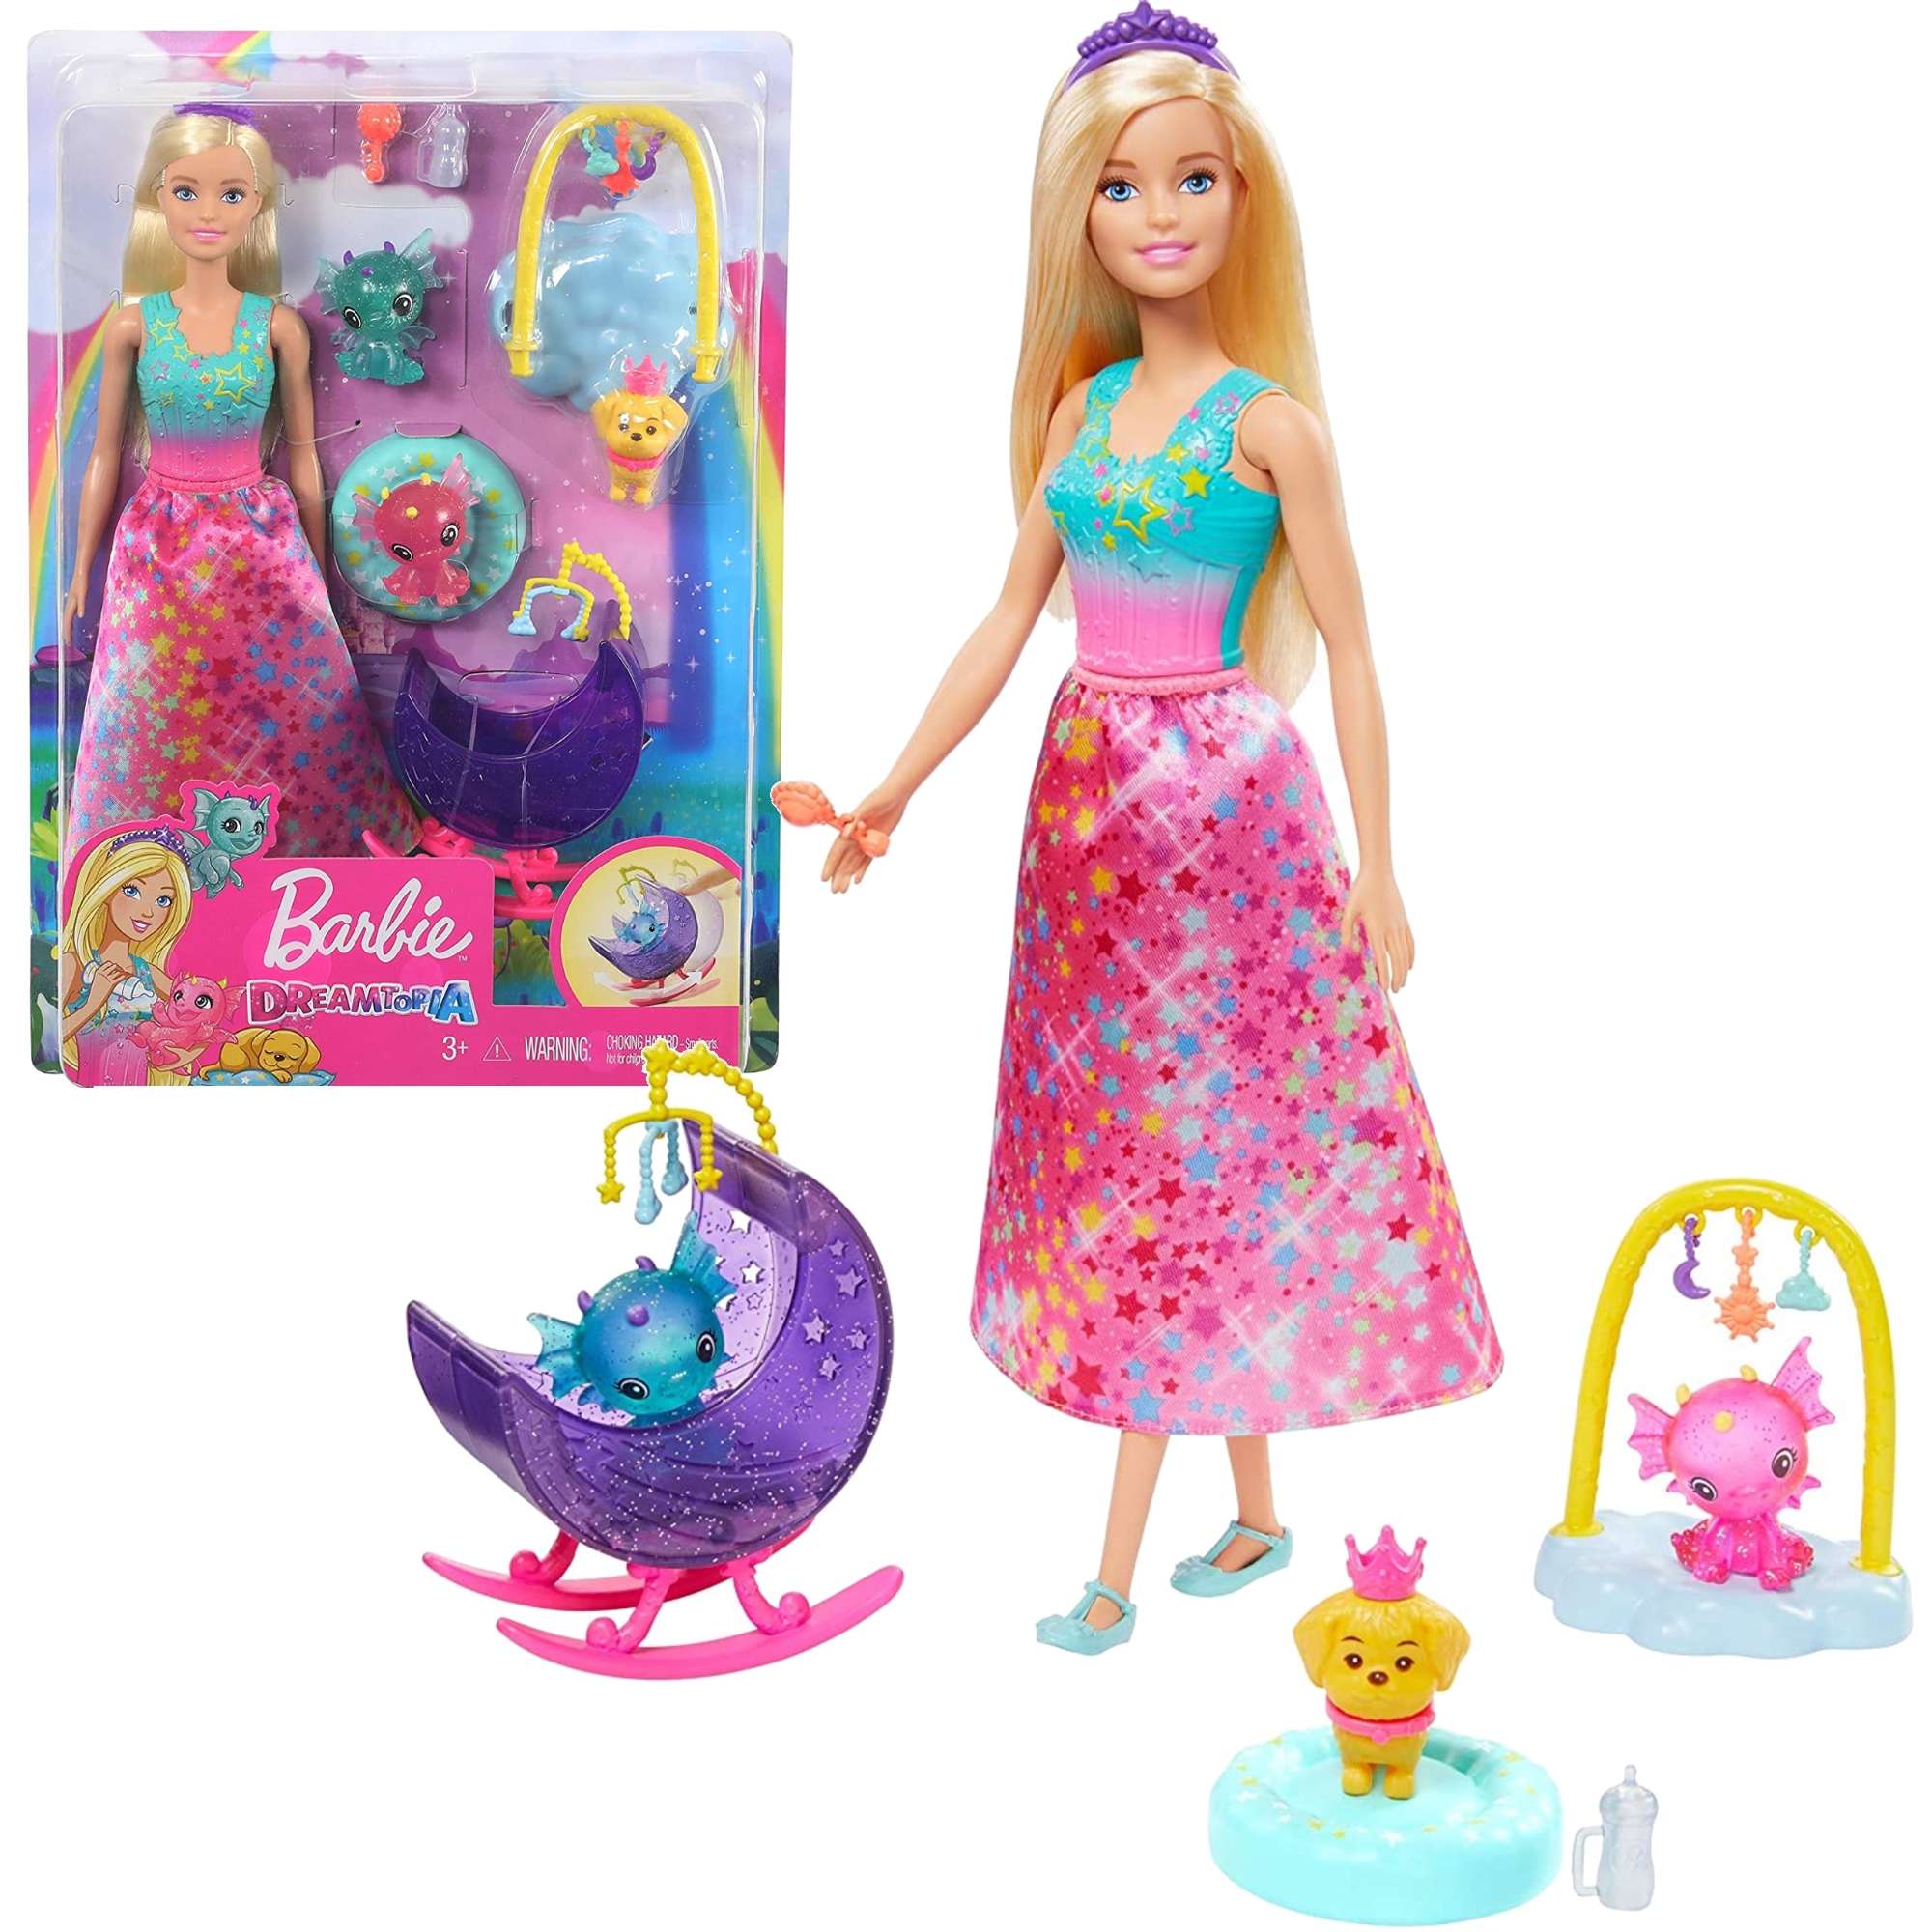 Lalka Barbie Dreamtopia Ba¶niowe przedszkole